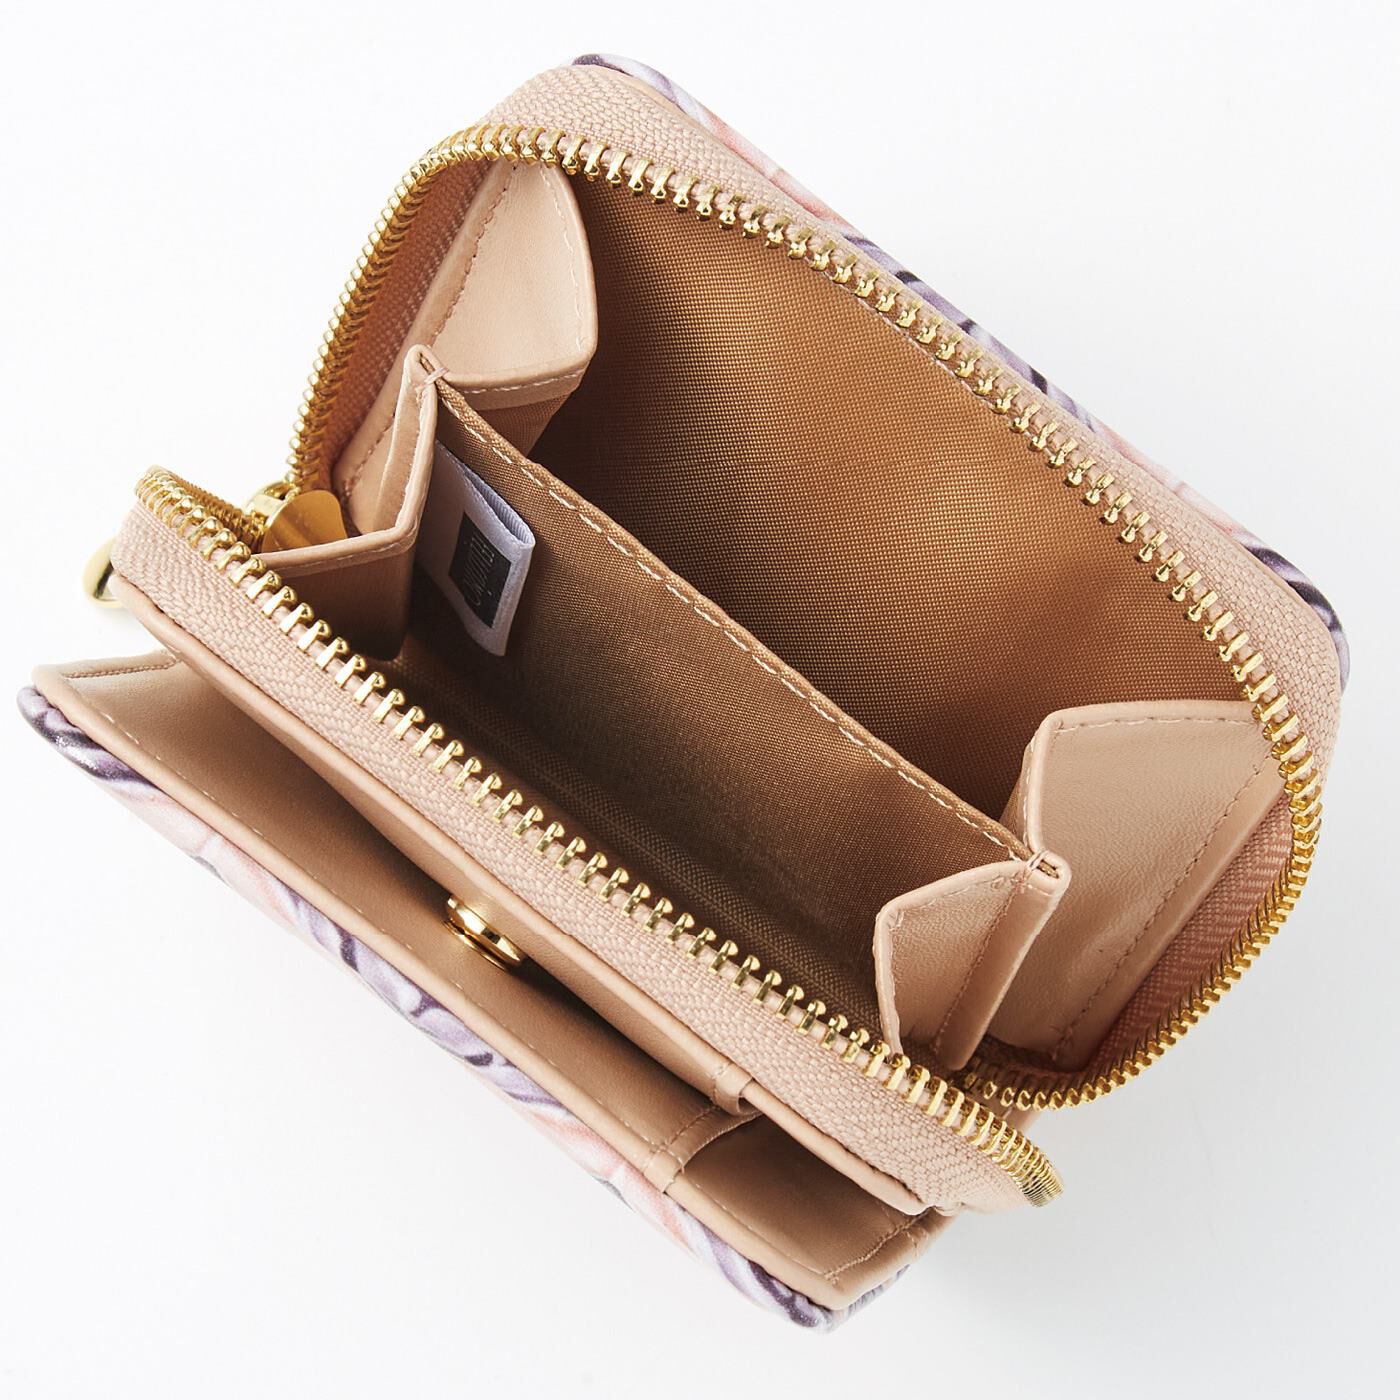 フェリシモの雑貨 Kraso|『世界のタイル博物館』和製マジョリカタイル模様の二つ折り財布|小銭入れは出し入れしやすい独立型。仕切り付きで仕分けもらくらく。